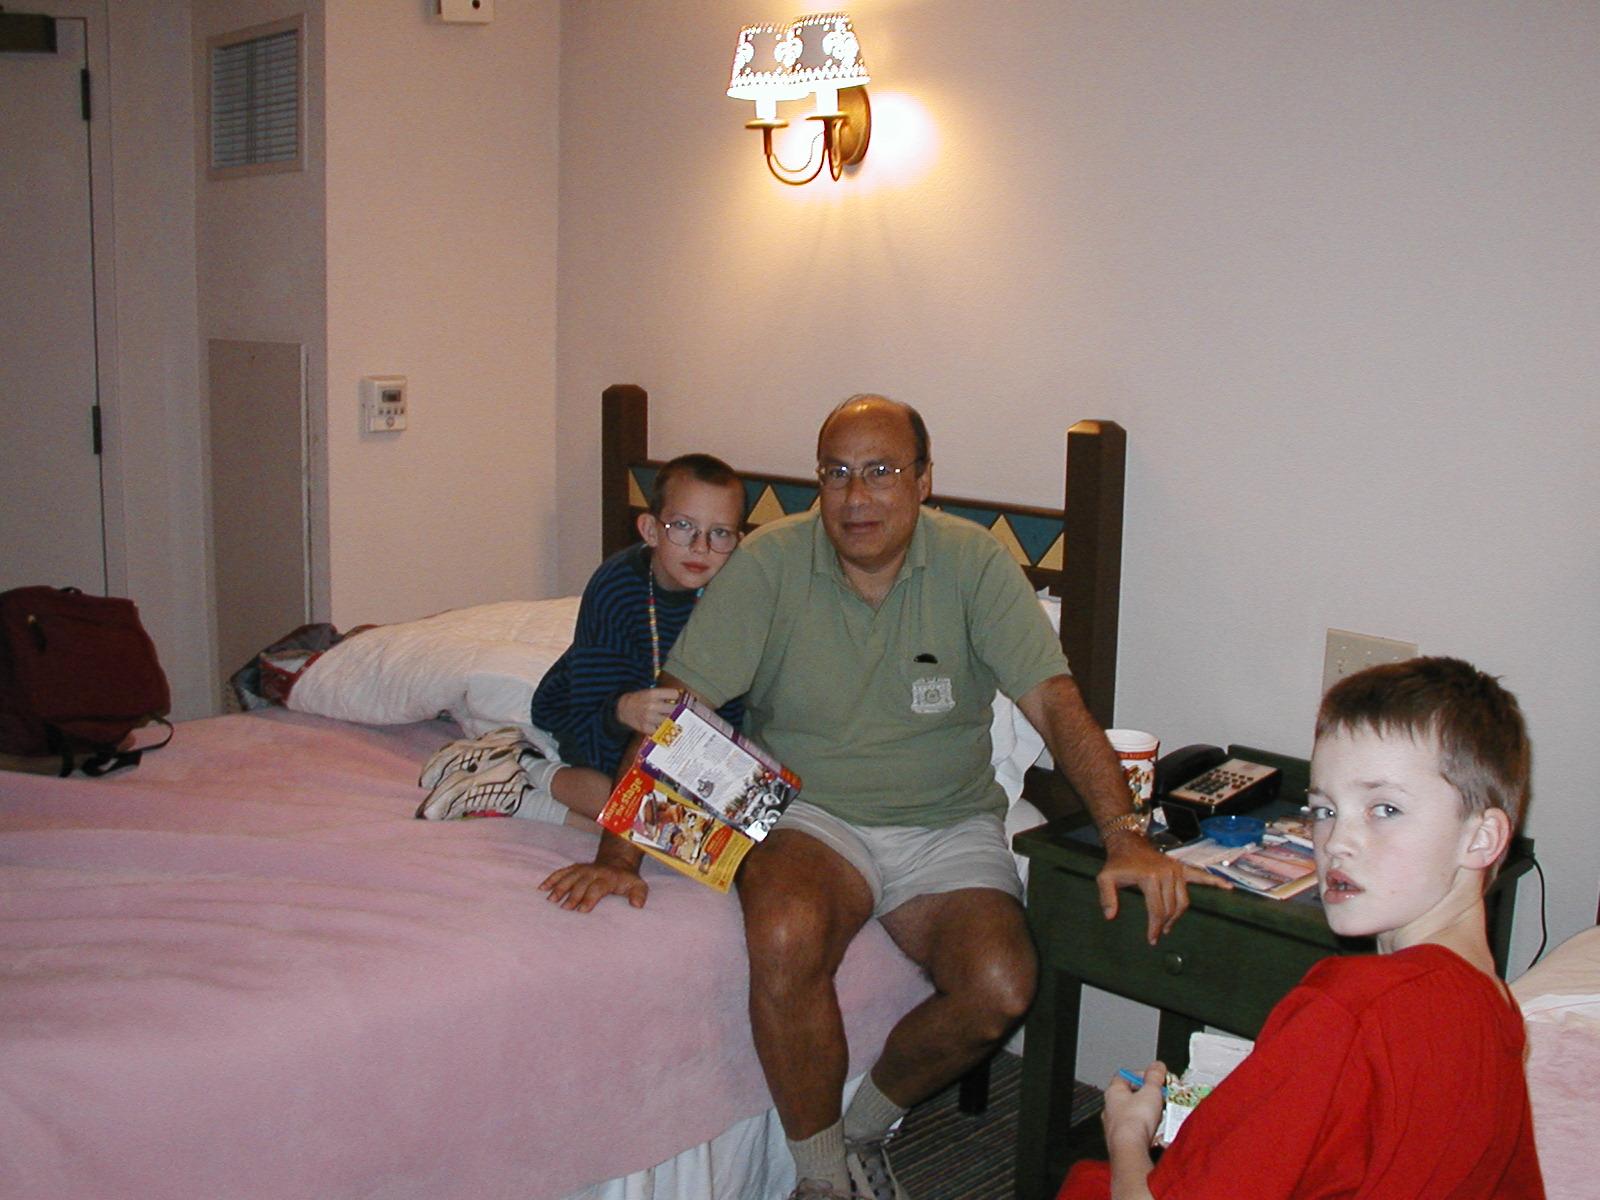 Poppa, Ryan, and Scotty